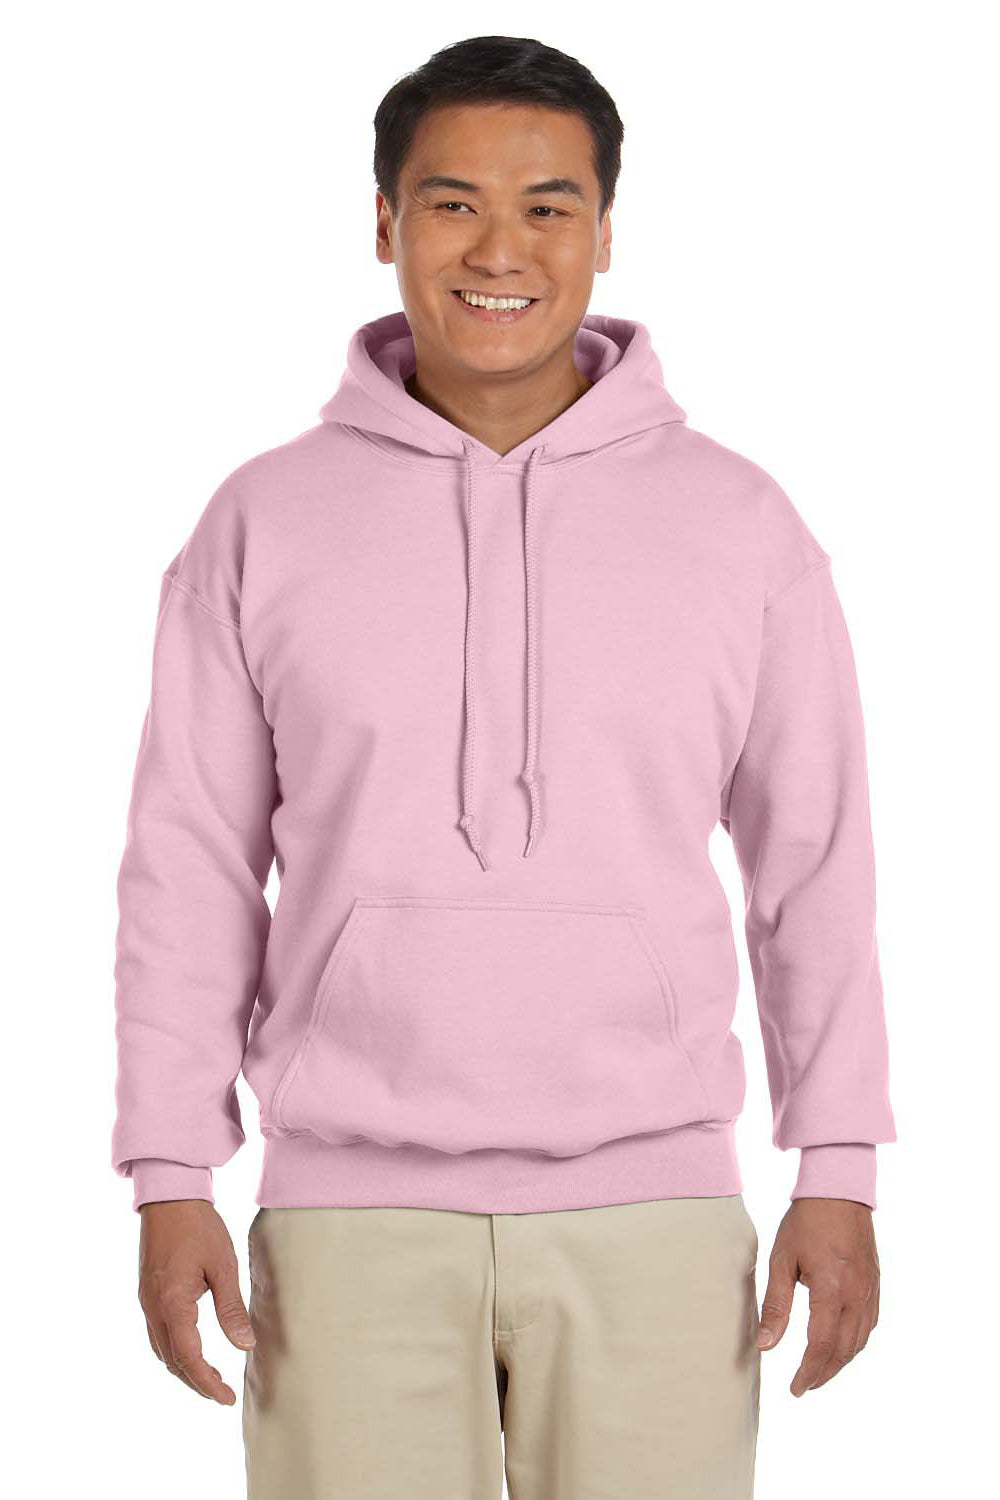 Gildan G185 Mens Hooded Sweatshirt Hoodie Light Pink Front